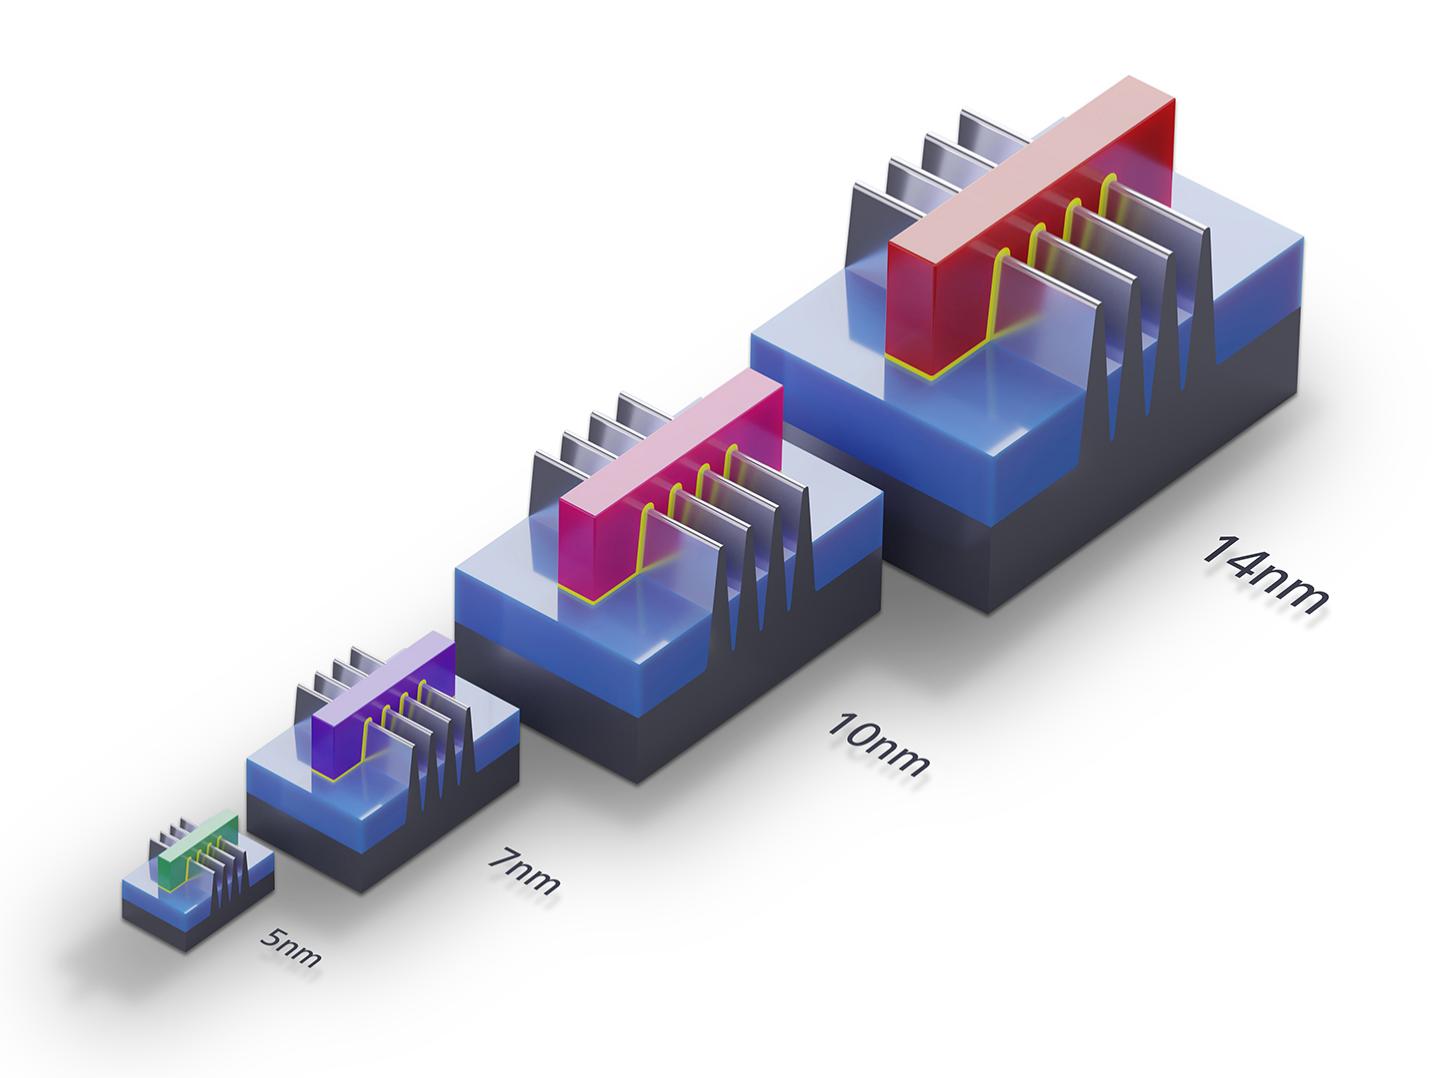 用于14 nm、10 nm、7 nm、5 nm技术节点的芯片制造过程的FinFET晶体管。3D模型比较大小和面积。摩尔定律和半导体晶体管路线图的插图。